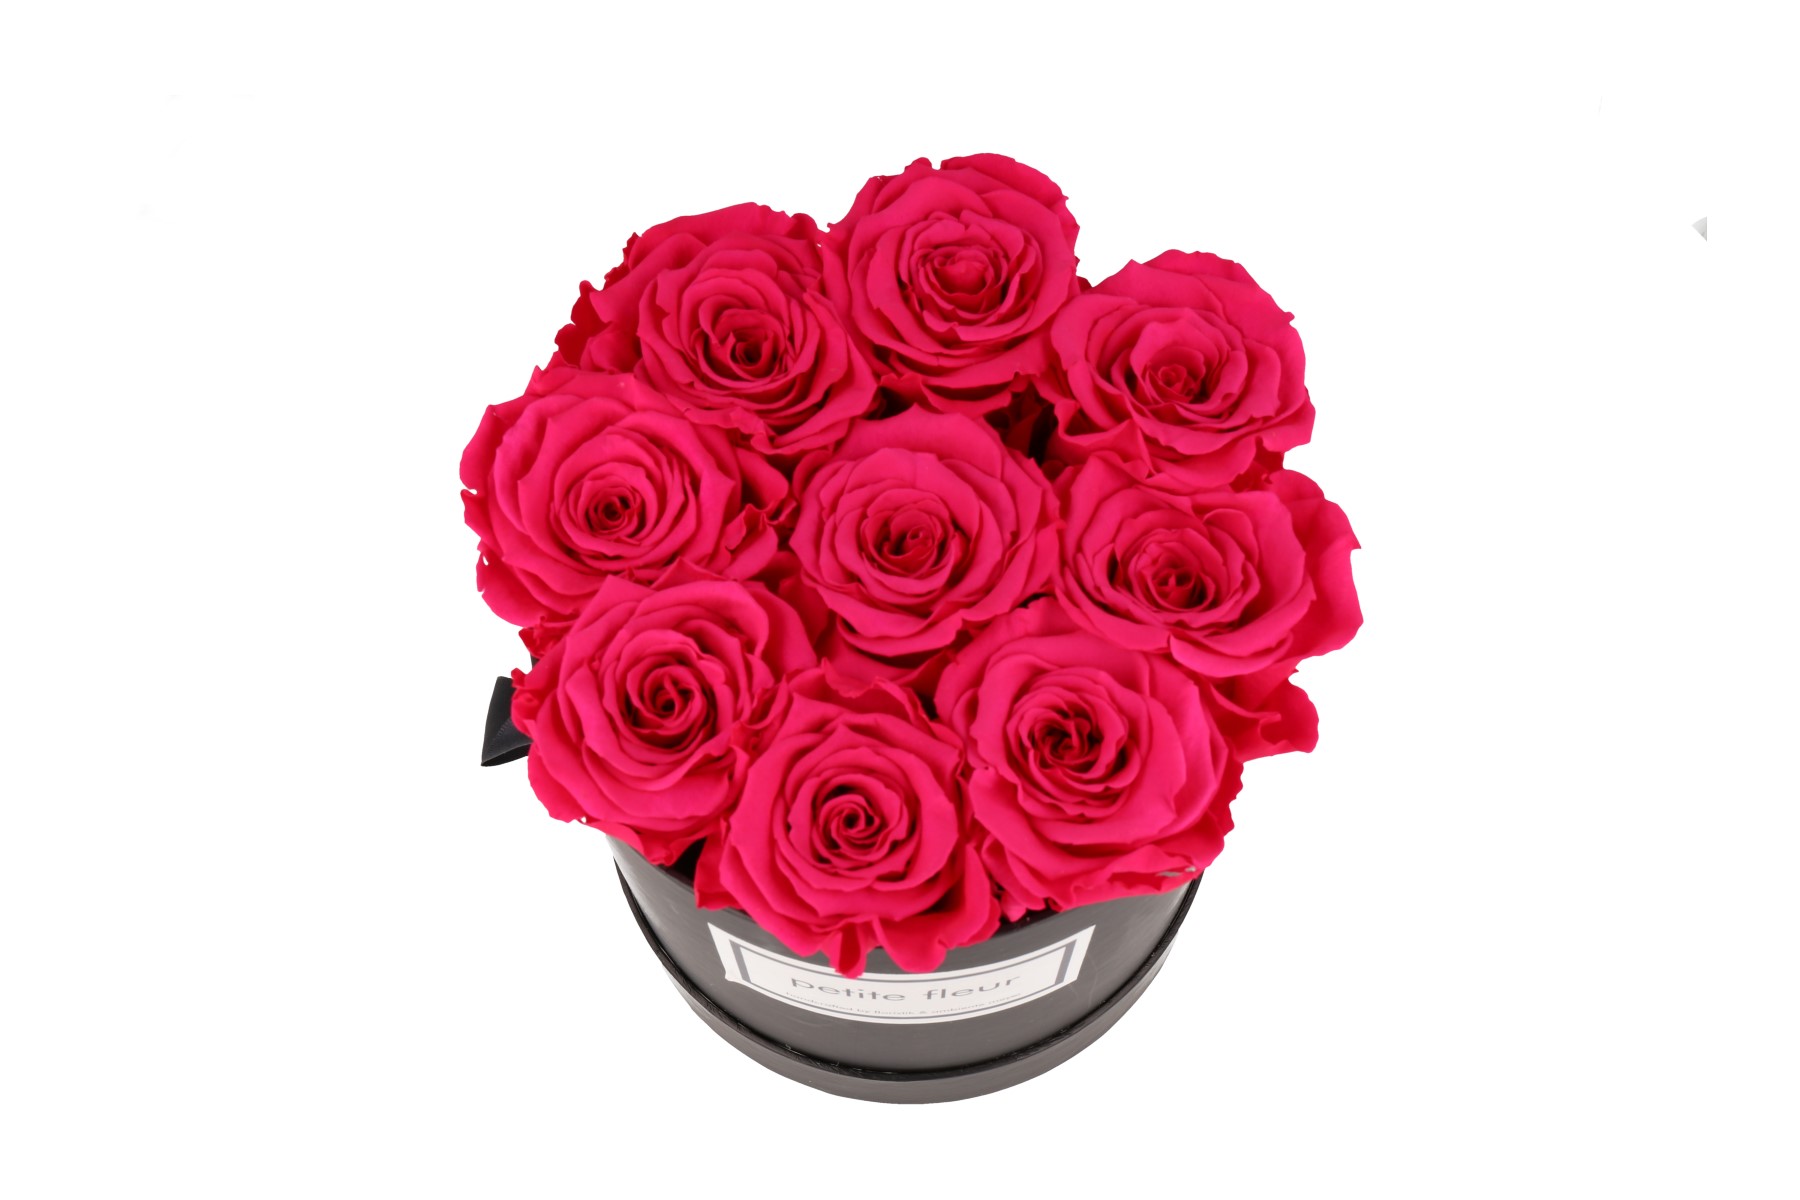 Petite Fleur Flowerbox Infinity Rosen M rund in Dunkel Pink mit 9-10 Rosen 